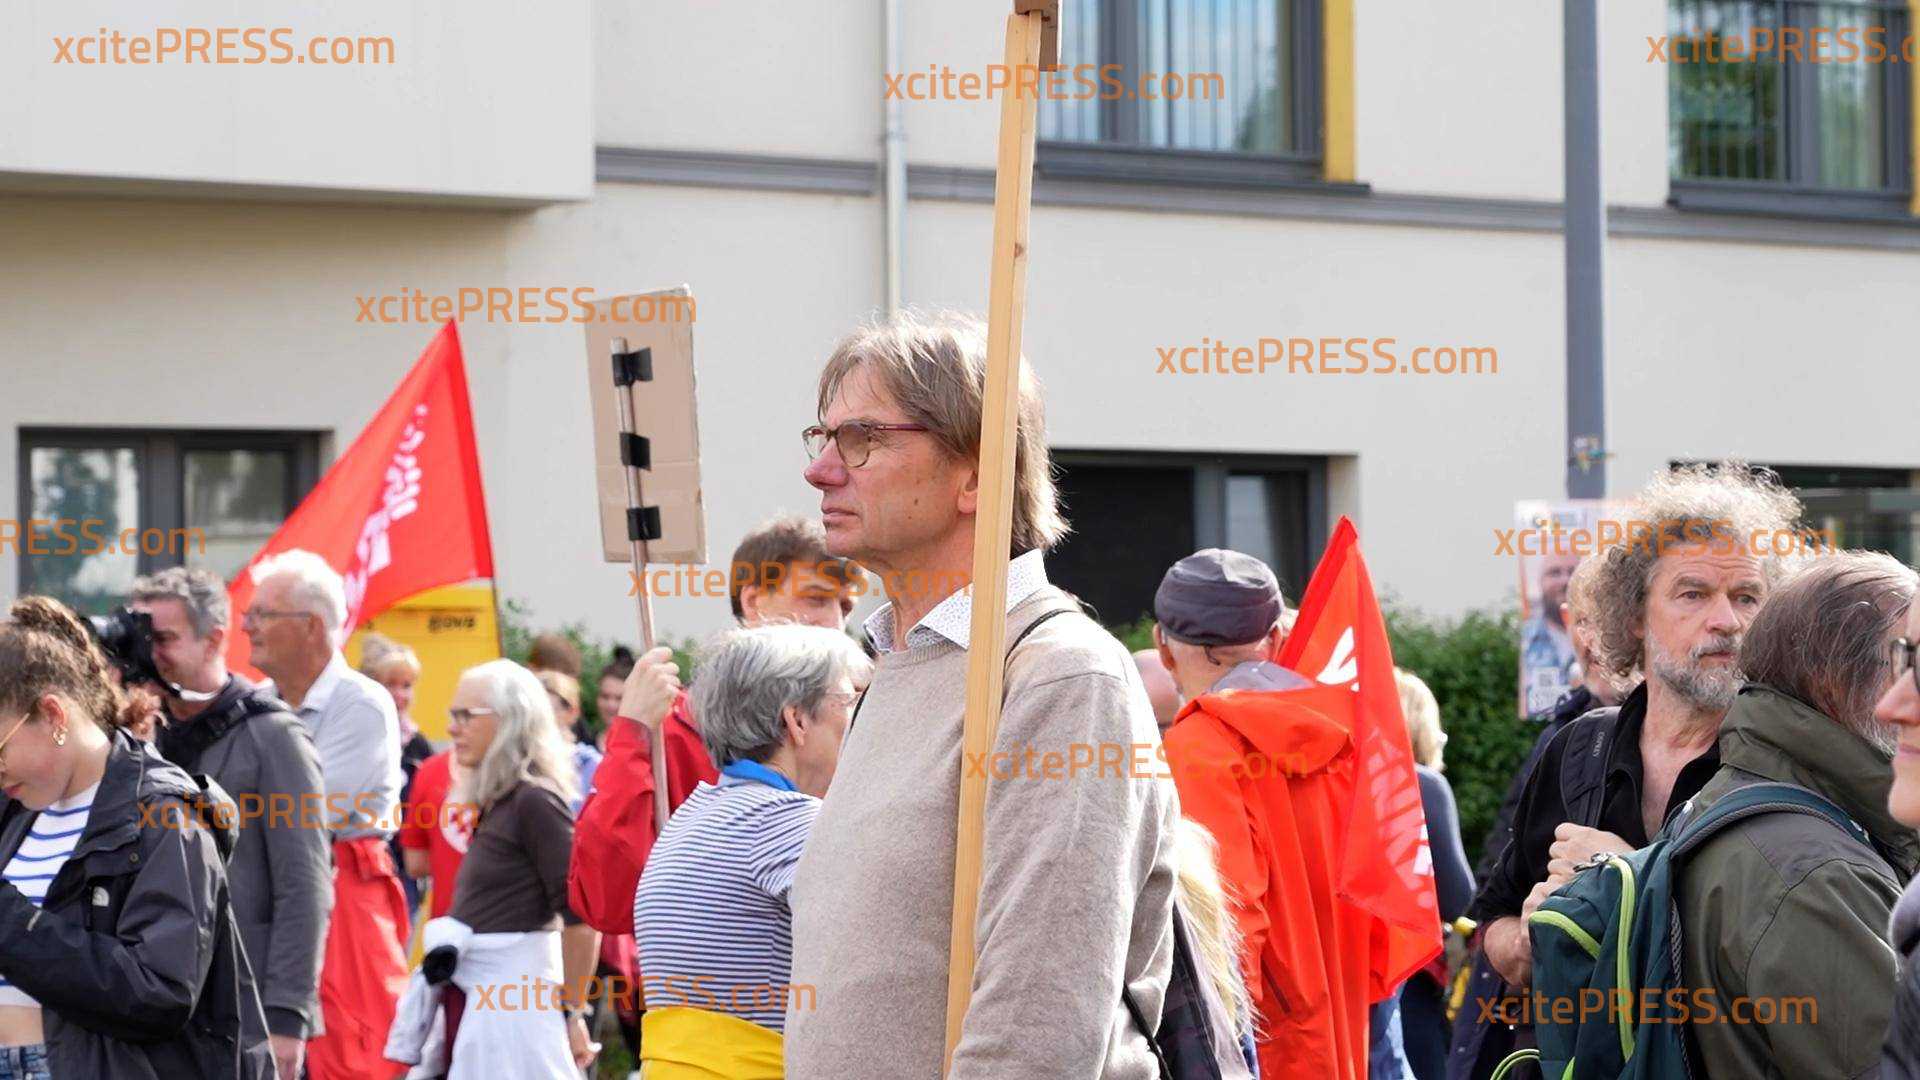 Nach heftiger Prügel-Attacke auf SPD-Spitzenkandidat Matthias Ecke: Mega-Solidaritäts-Demo am Tatort - der Schandauer Straße in Dresden! Viele Menschen wollen die 